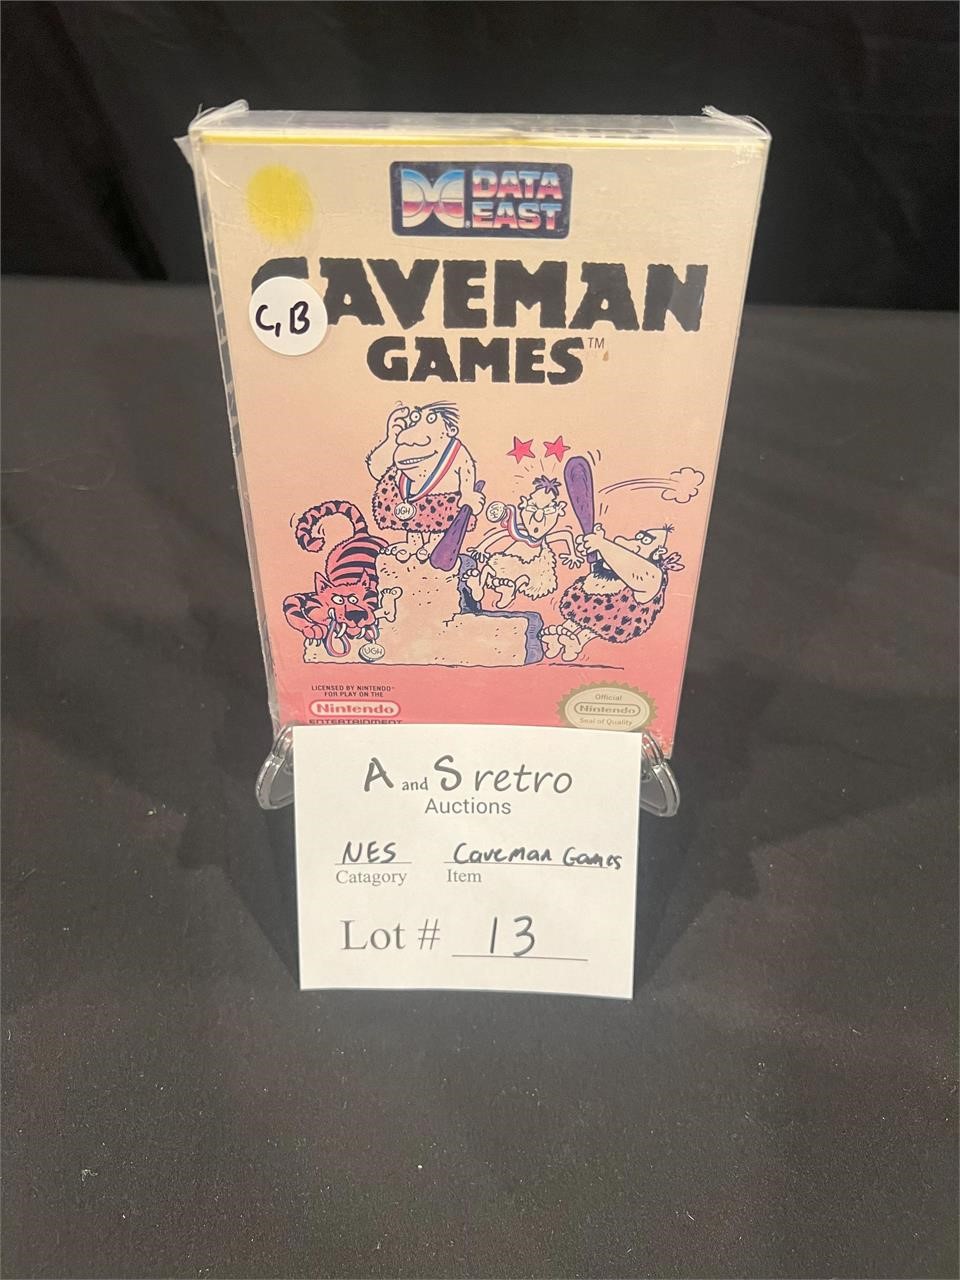 Caveman Games CB for Nintendo (NES)